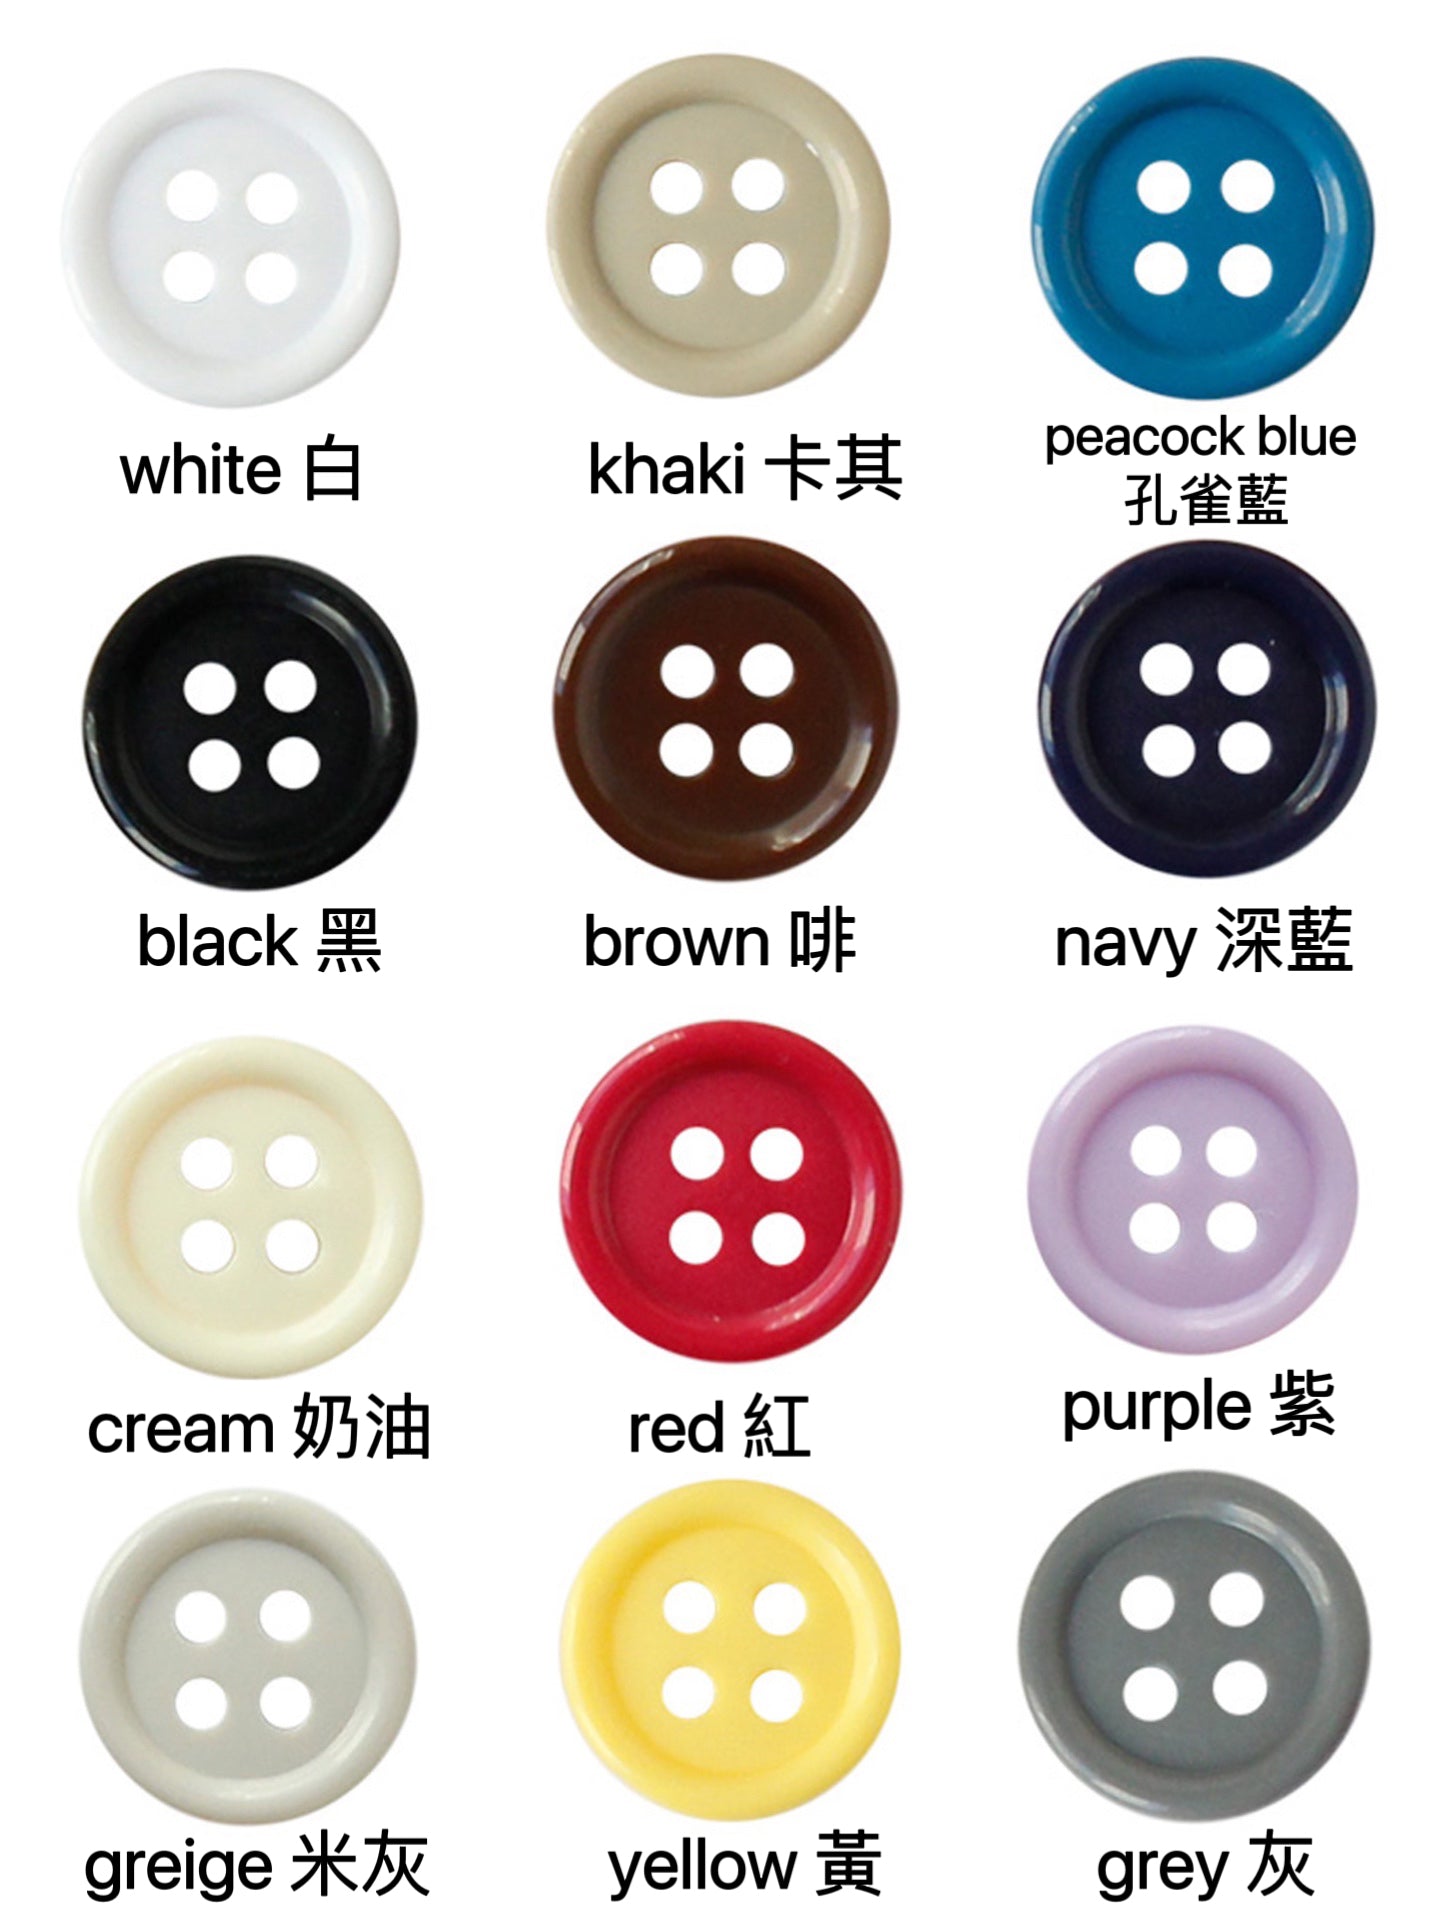 plastic buttons 10mm 20pcs 純色膠鈕扣 10mm 20粒裝- 12 colors